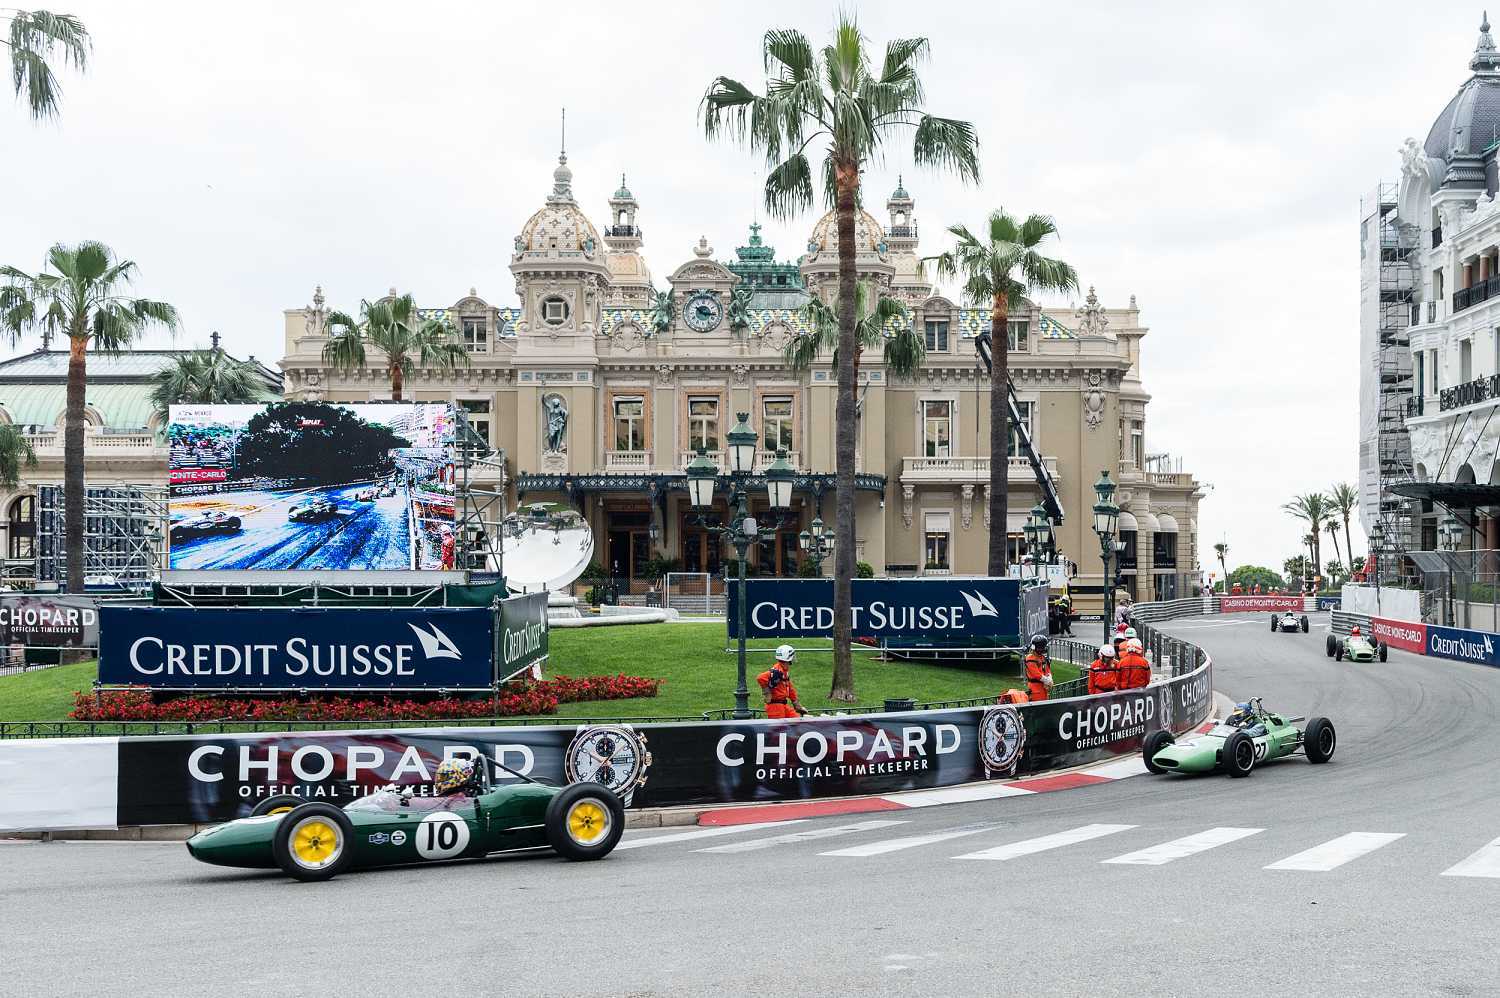 Chopard oficiální časomíra Grand Prix de Monaco 1 | Chopard oficiální časomíra Grand Prix de Monaco 4